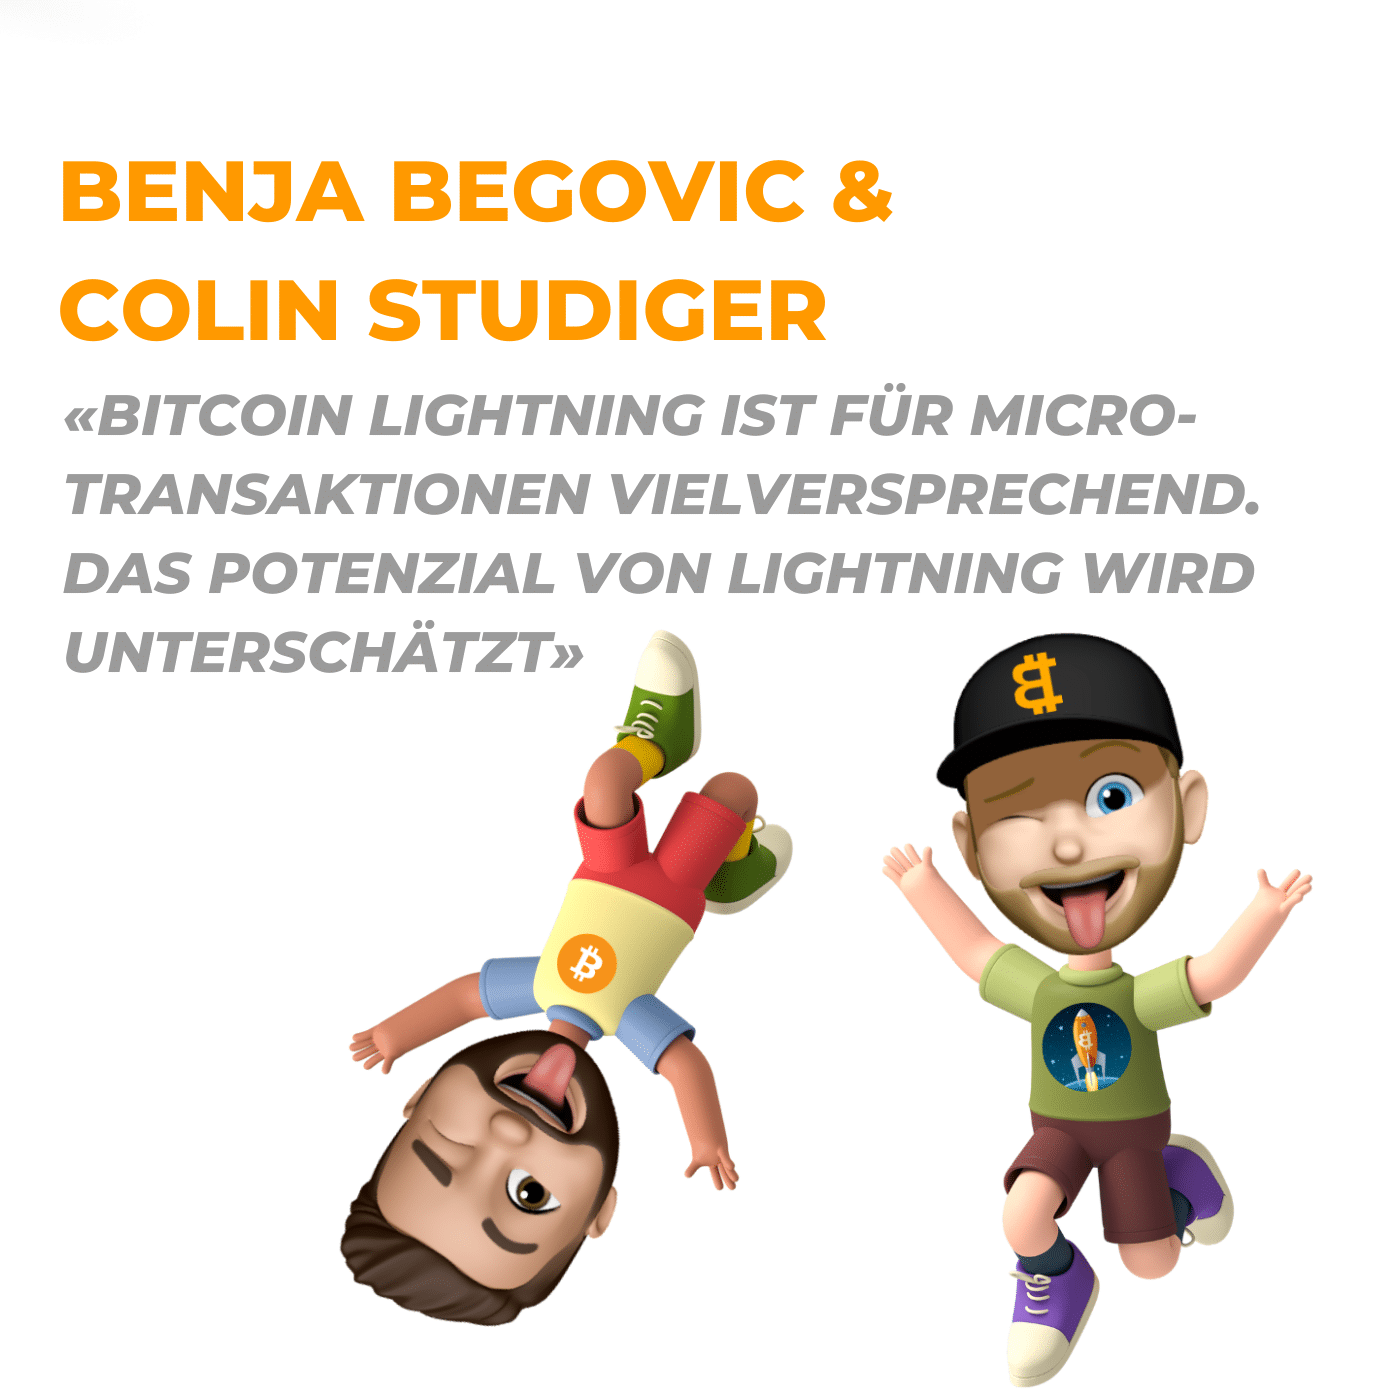 Benja Begovic & Colin Studiger